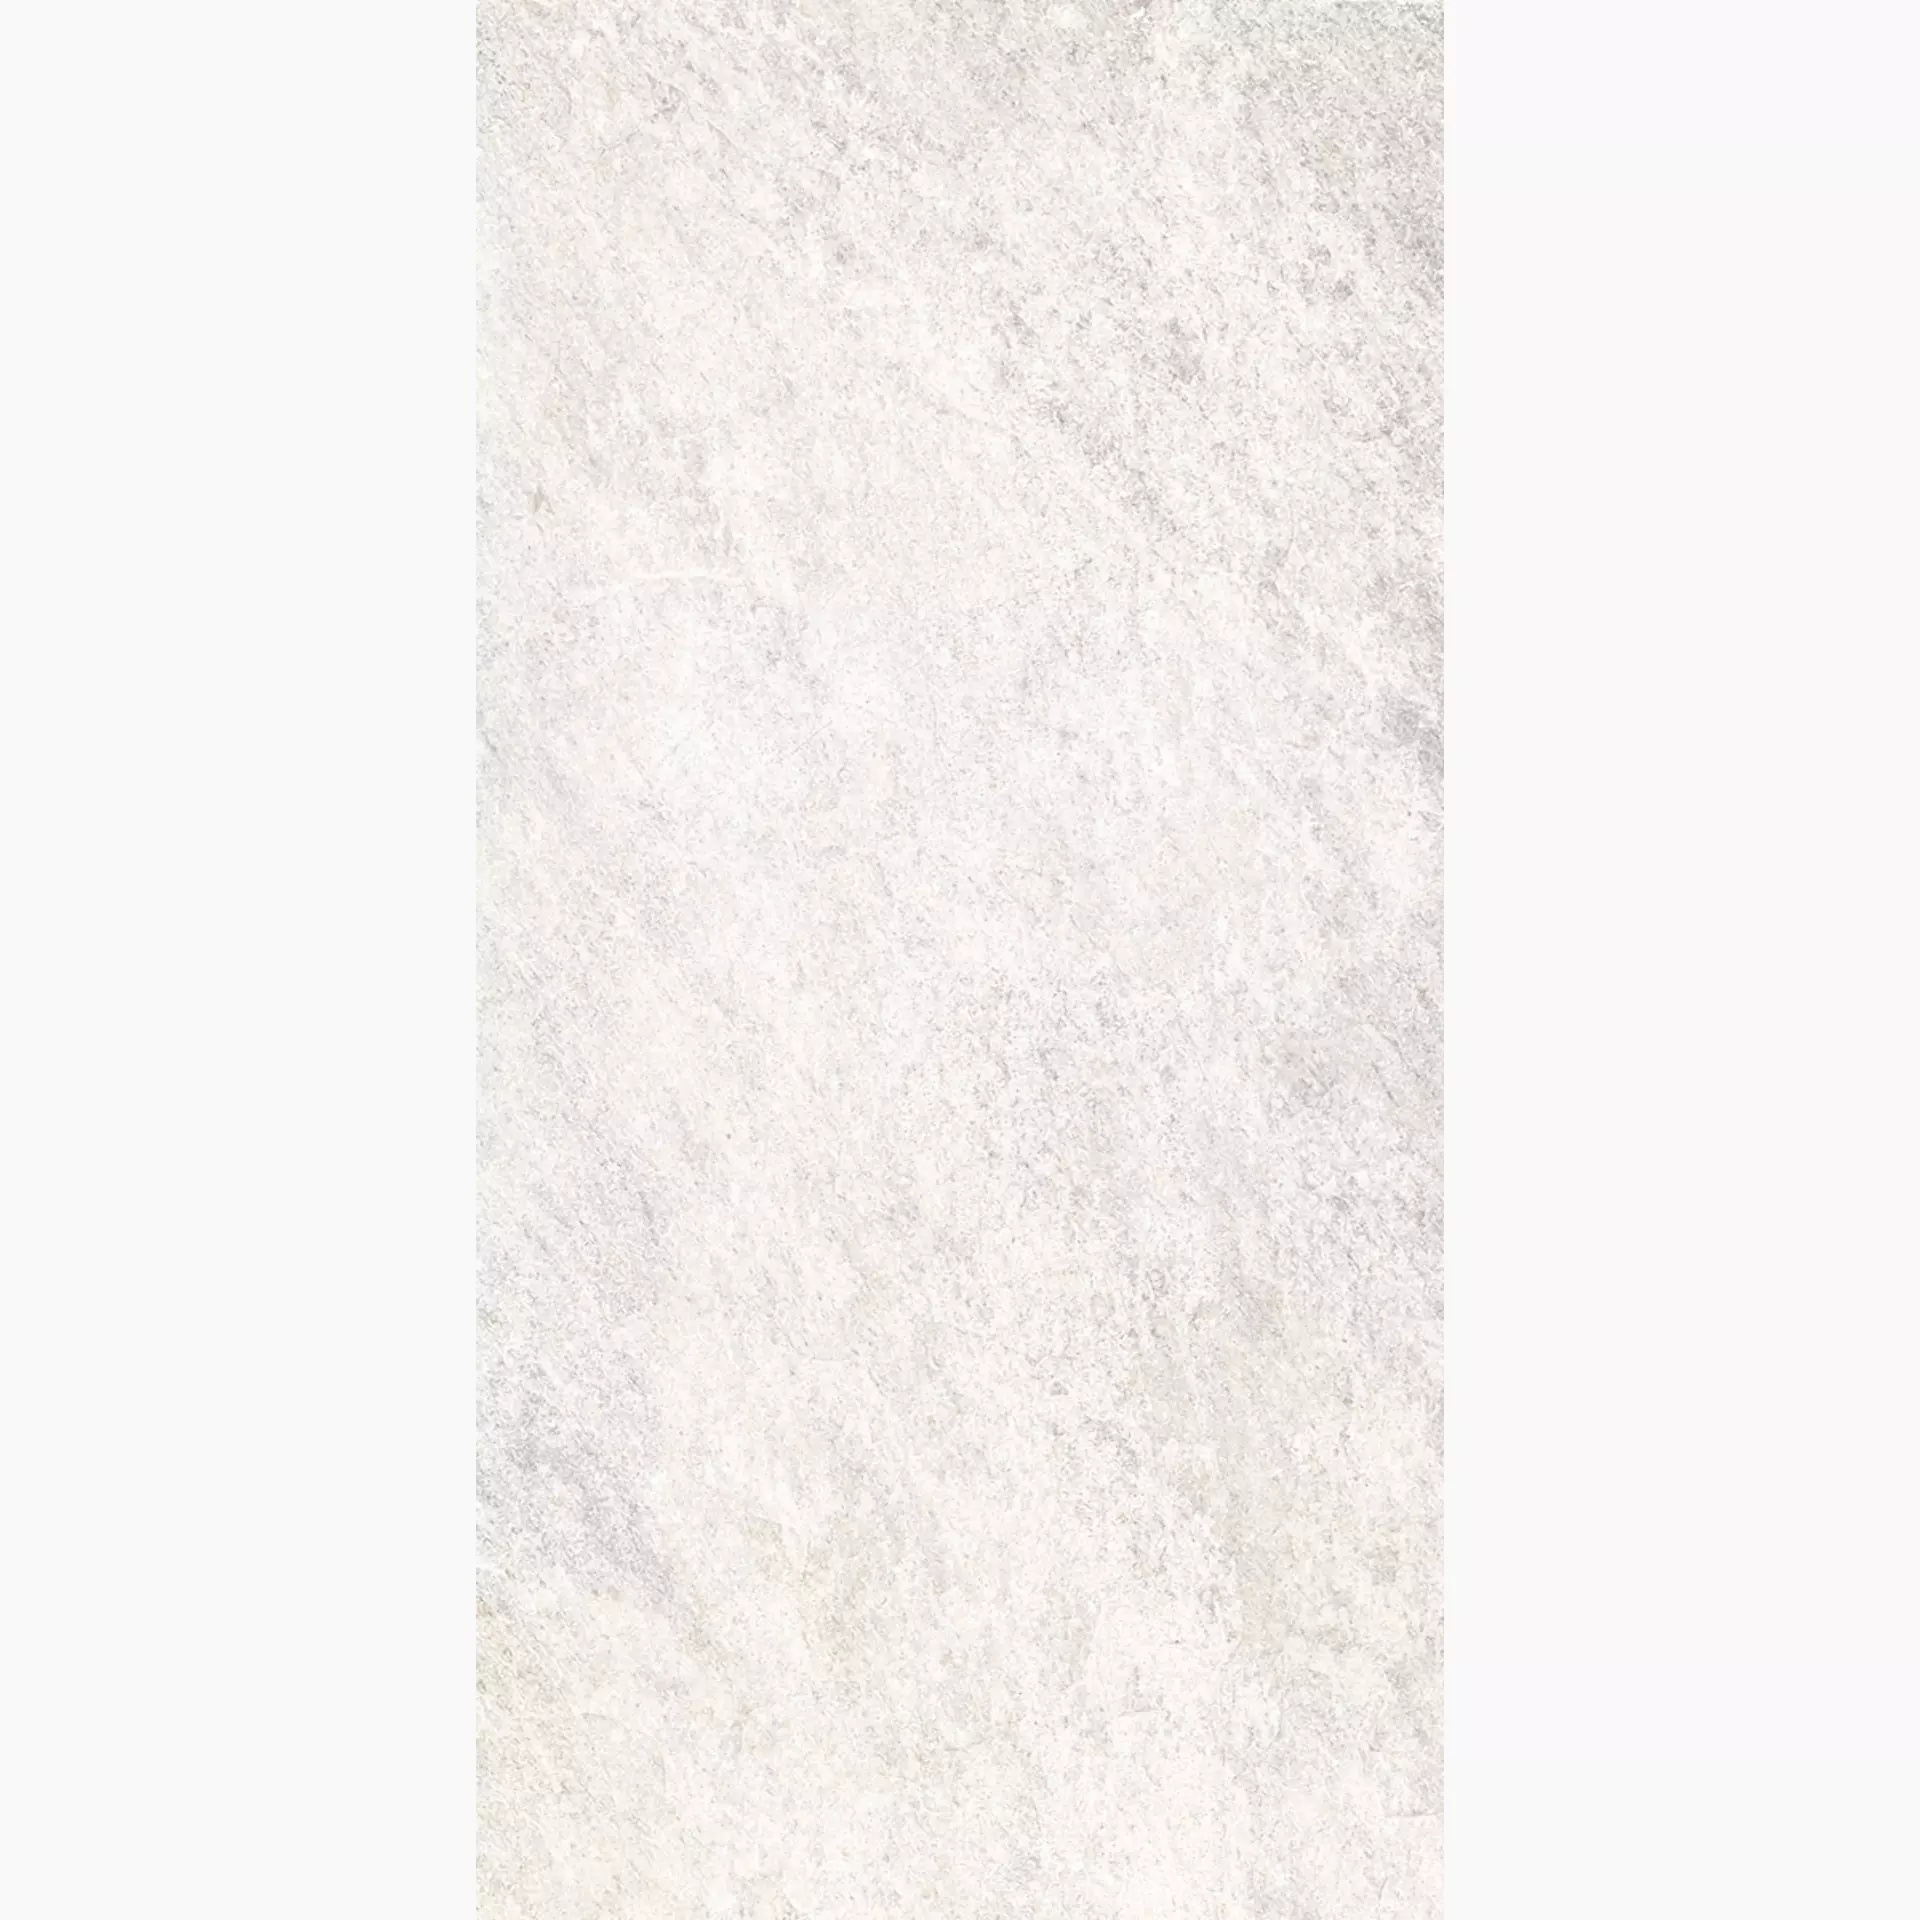 Rondine Quarzi White Naturale J87297 30,5x60,5cm 9,5mm